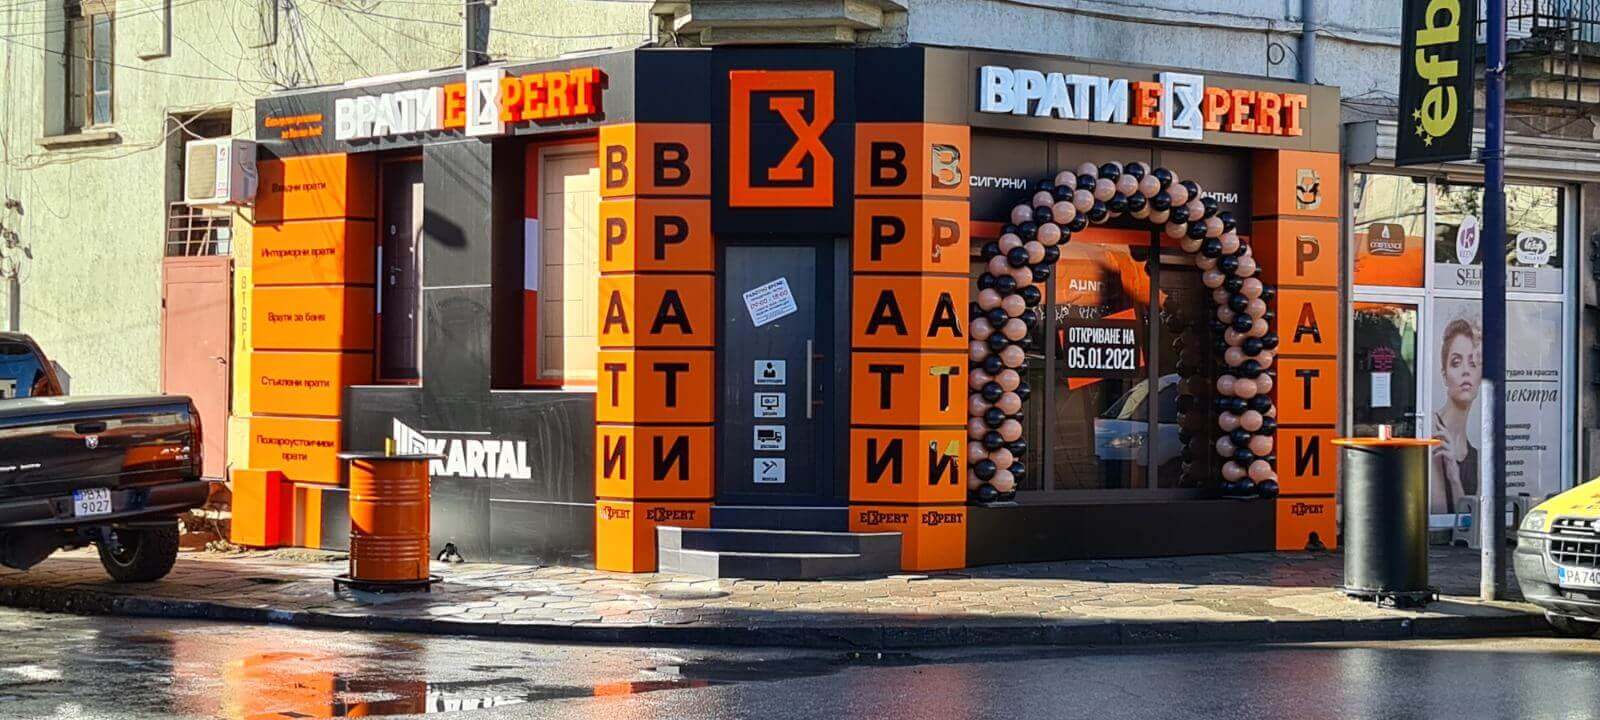 Магазин Врати Експерт Пазарджик